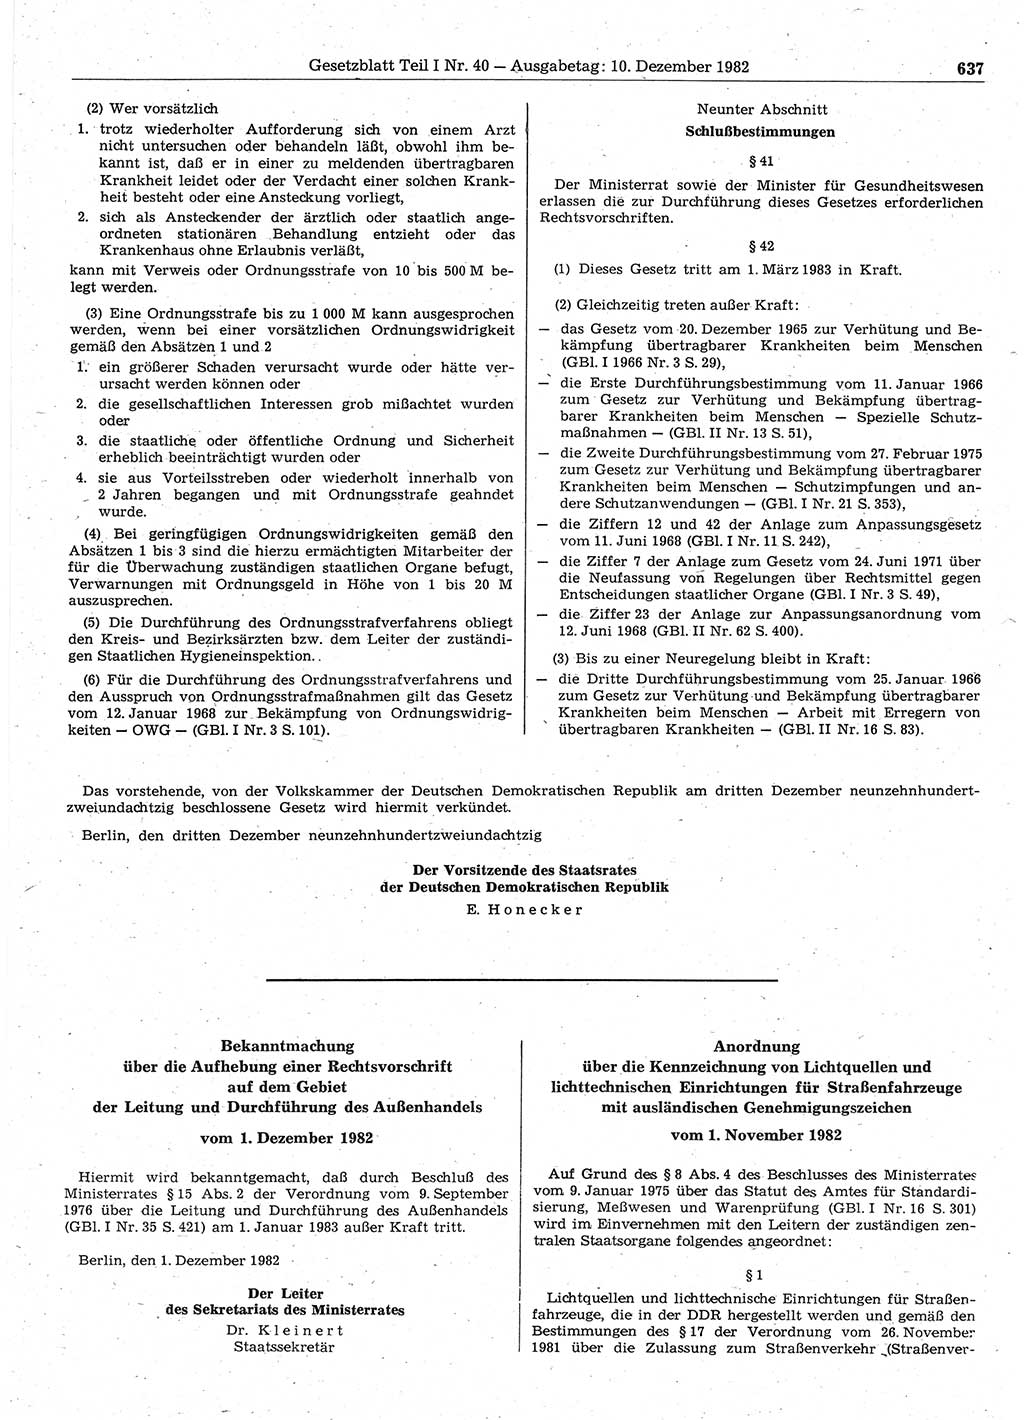 Gesetzblatt (GBl.) der Deutschen Demokratischen Republik (DDR) Teil Ⅰ 1982, Seite 637 (GBl. DDR Ⅰ 1982, S. 637)